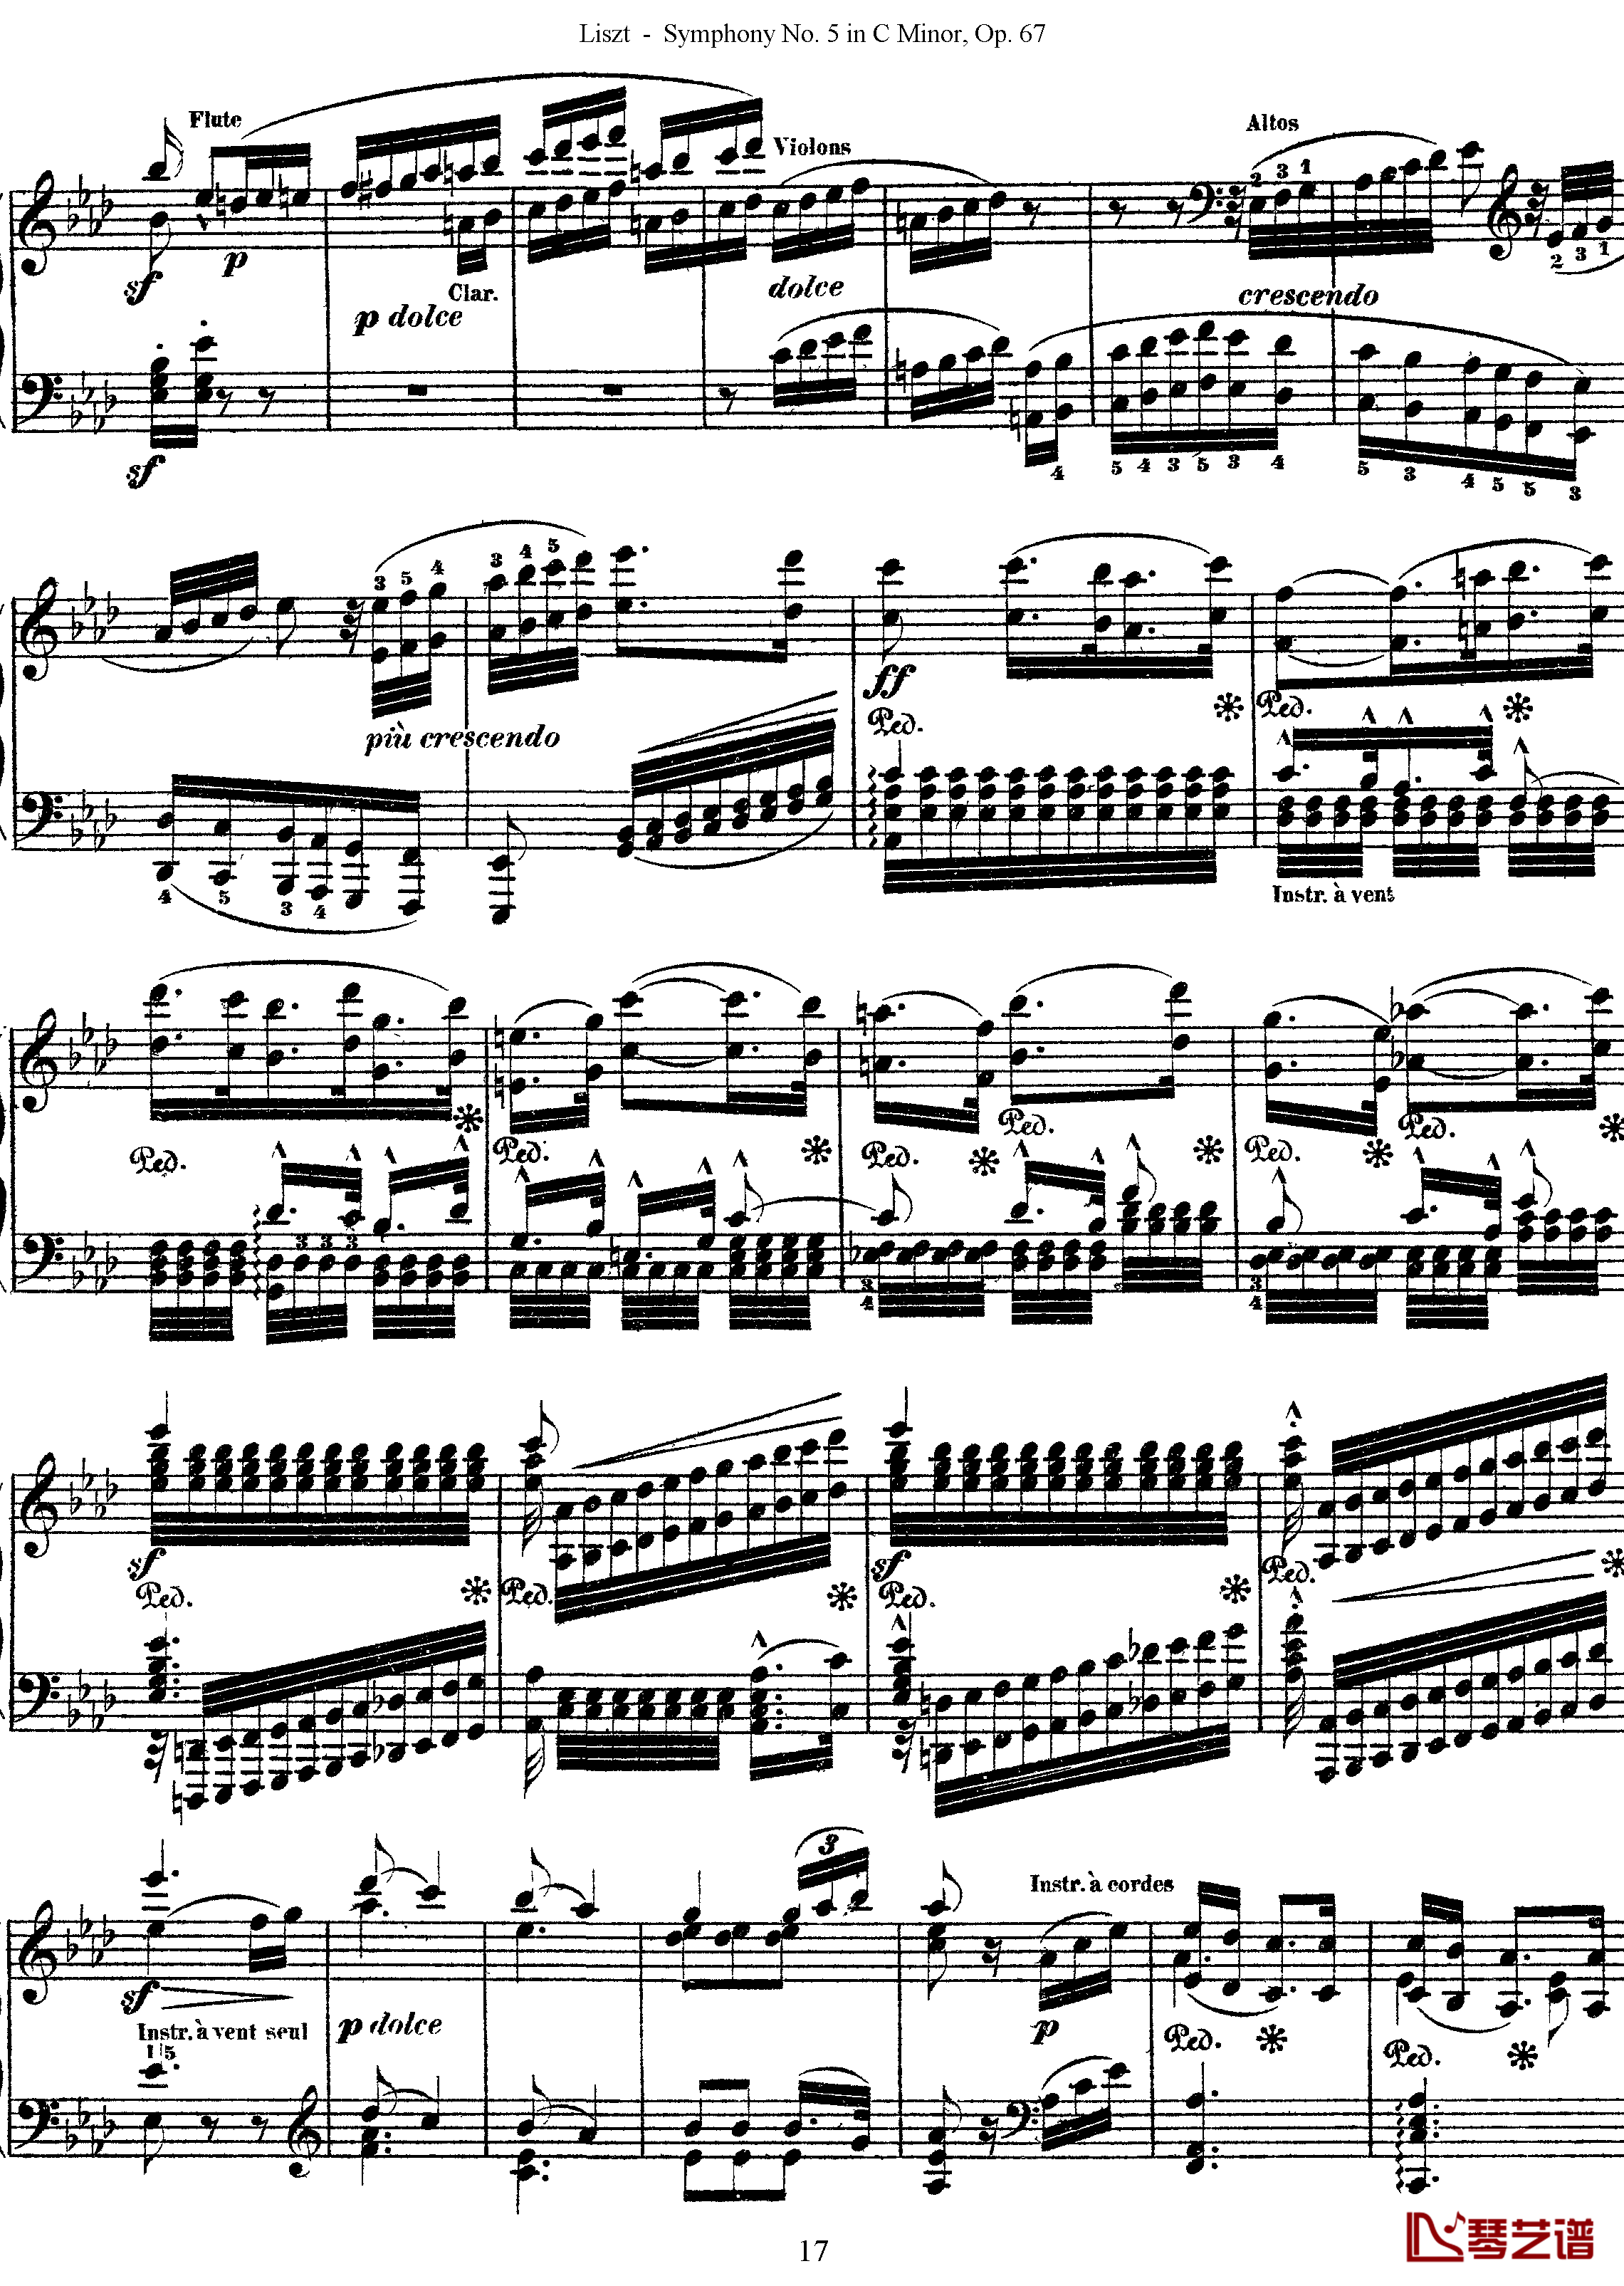 第五交响乐的钢琴曲钢琴谱-李斯特-李斯特改编自贝多芬17